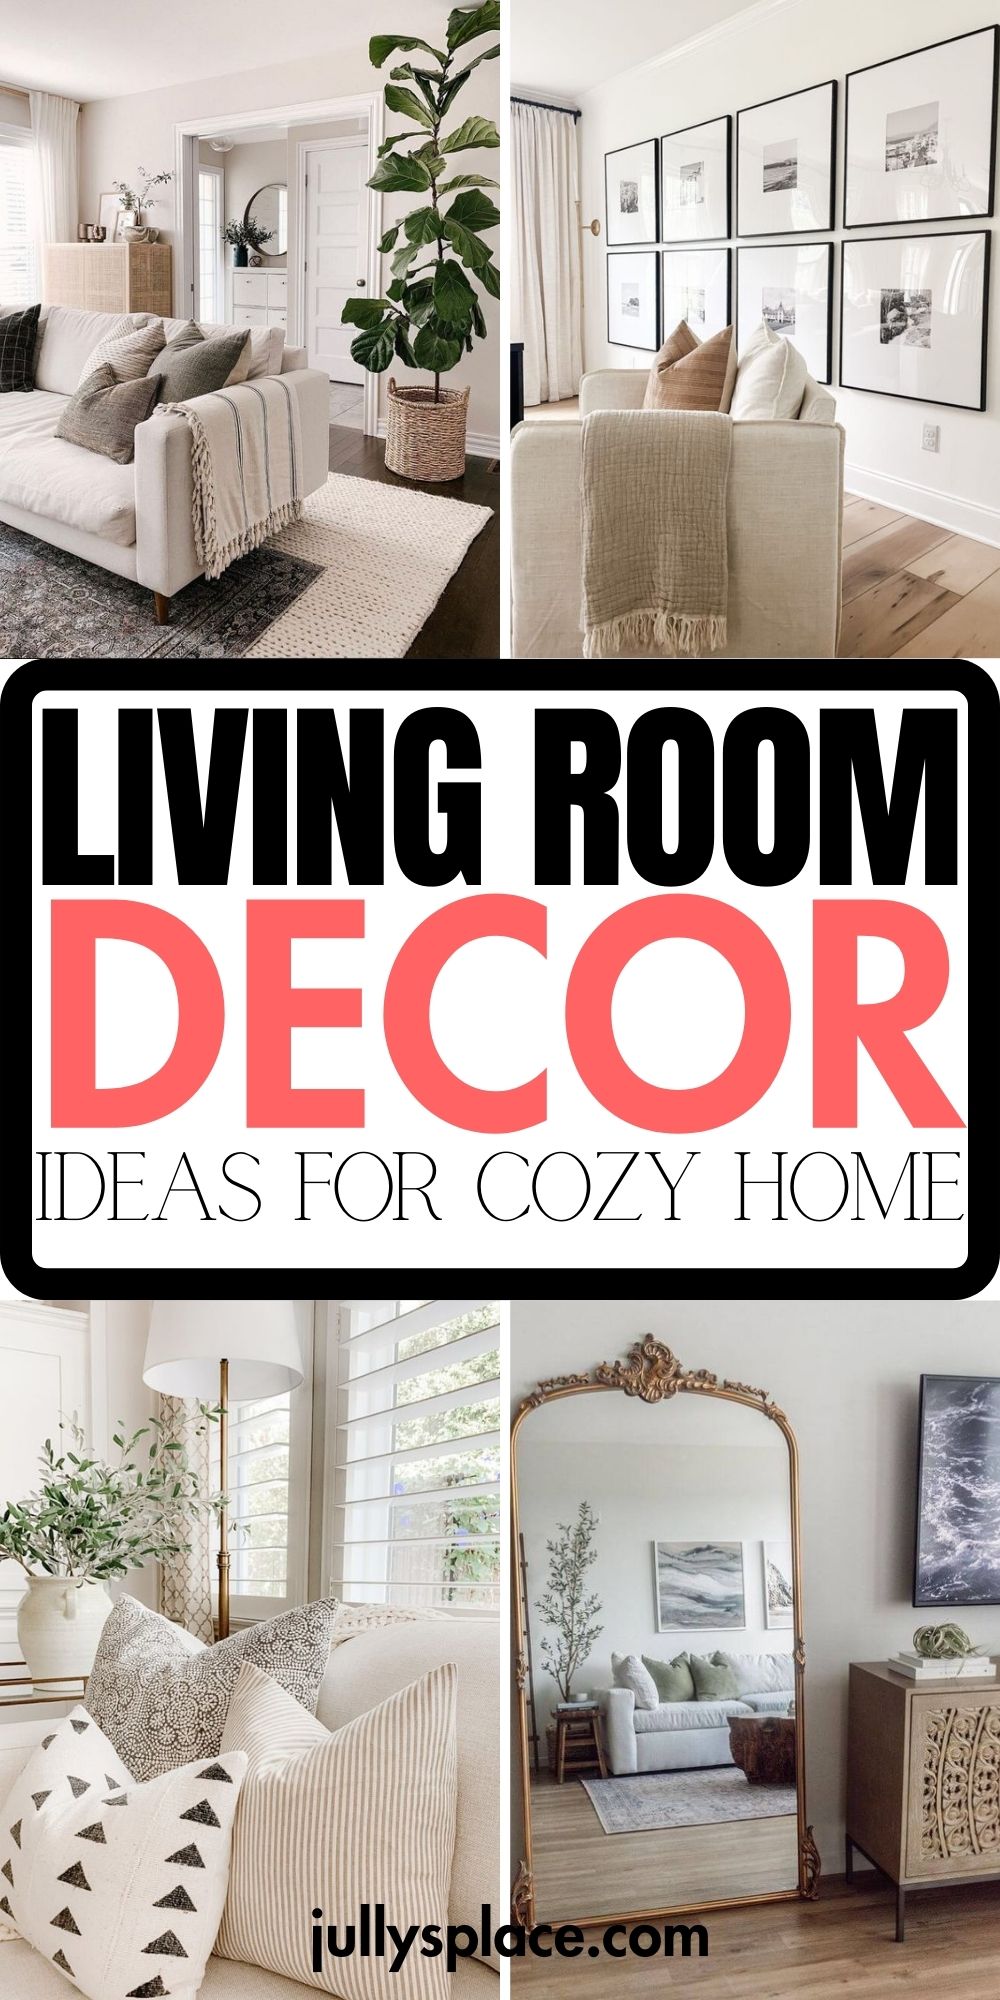 30 EASY Living Room Decor Ideas for a Cozy Home